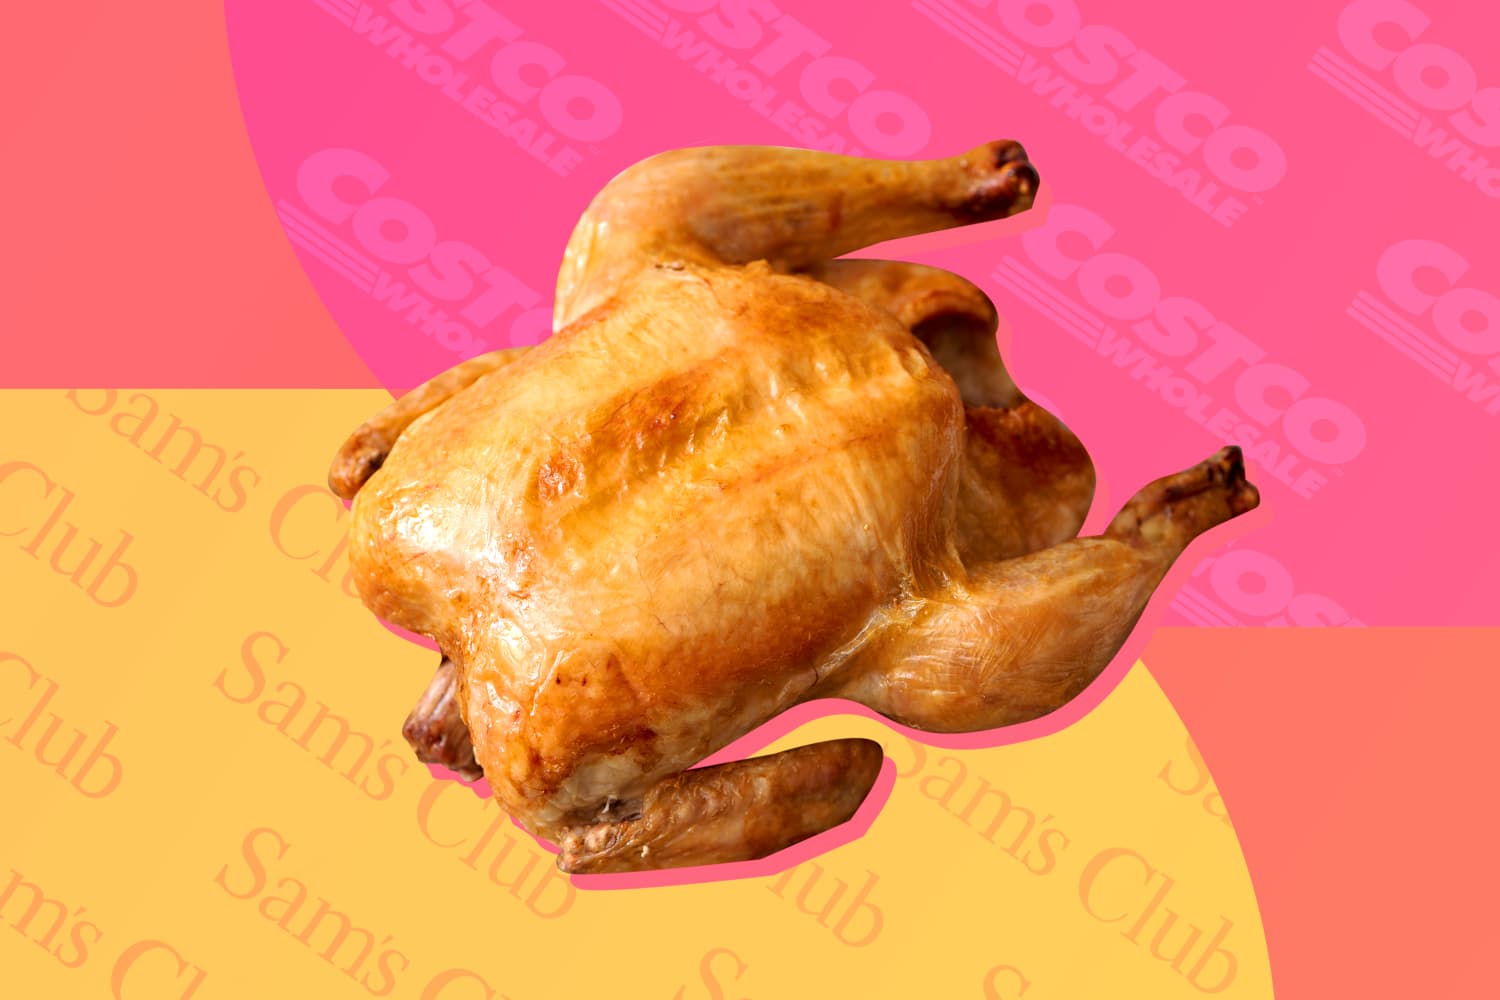 Costco Sams Club Rotisserie Chicken Taste Test - The Kitchn